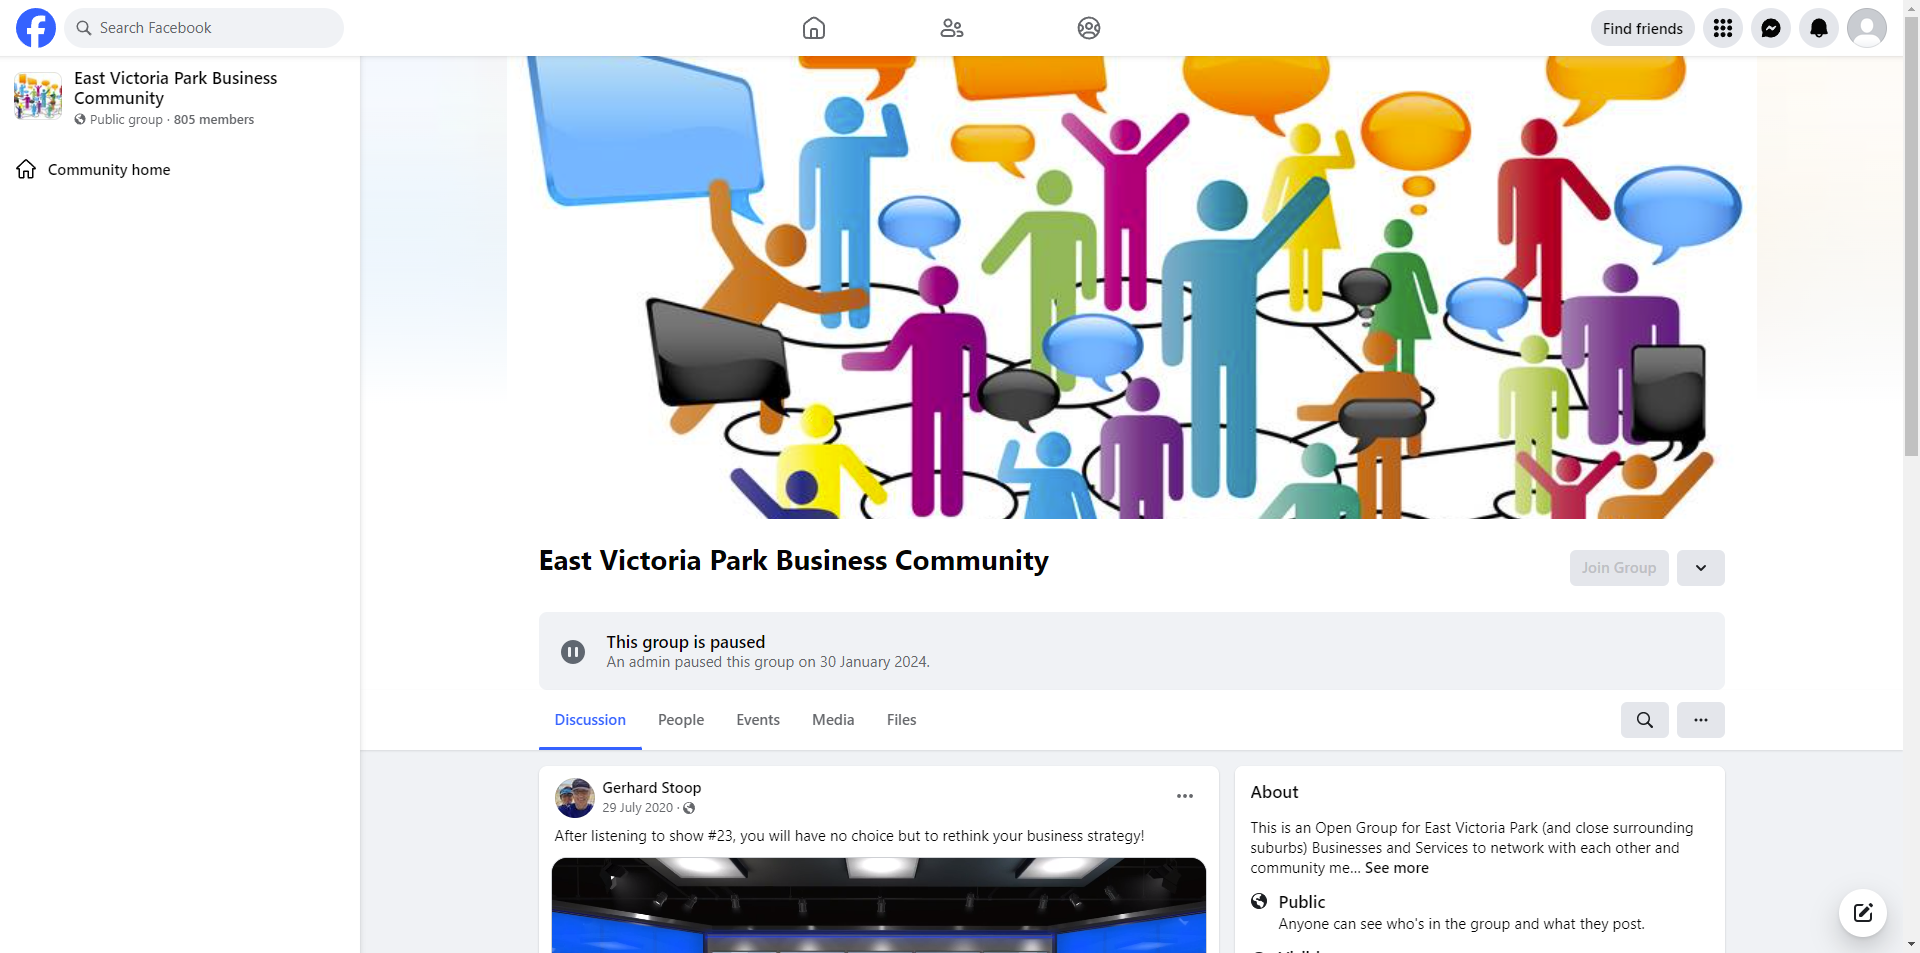 East Victoria Park Business Community